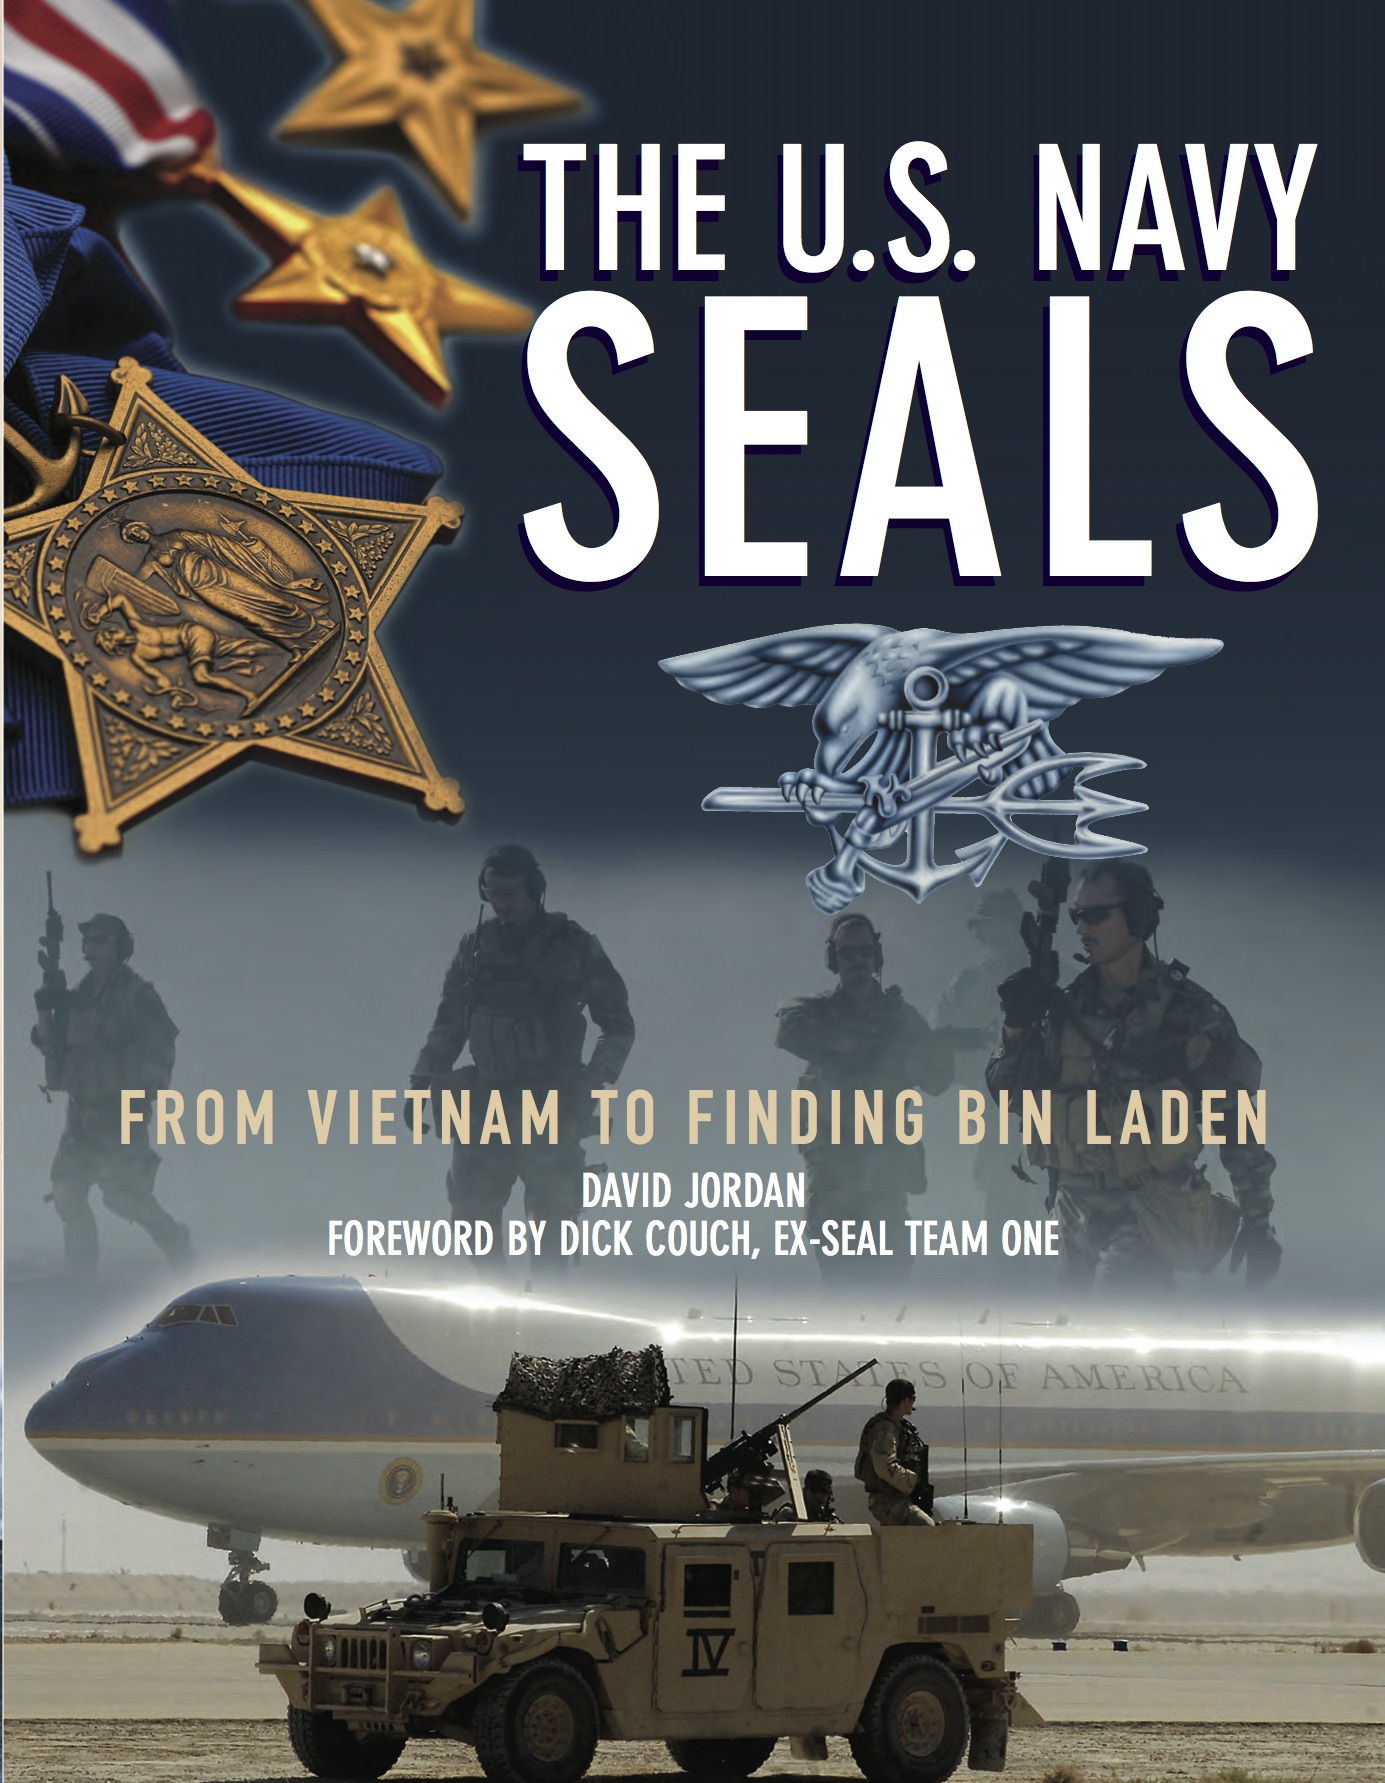 The U.S. Navy SEALs